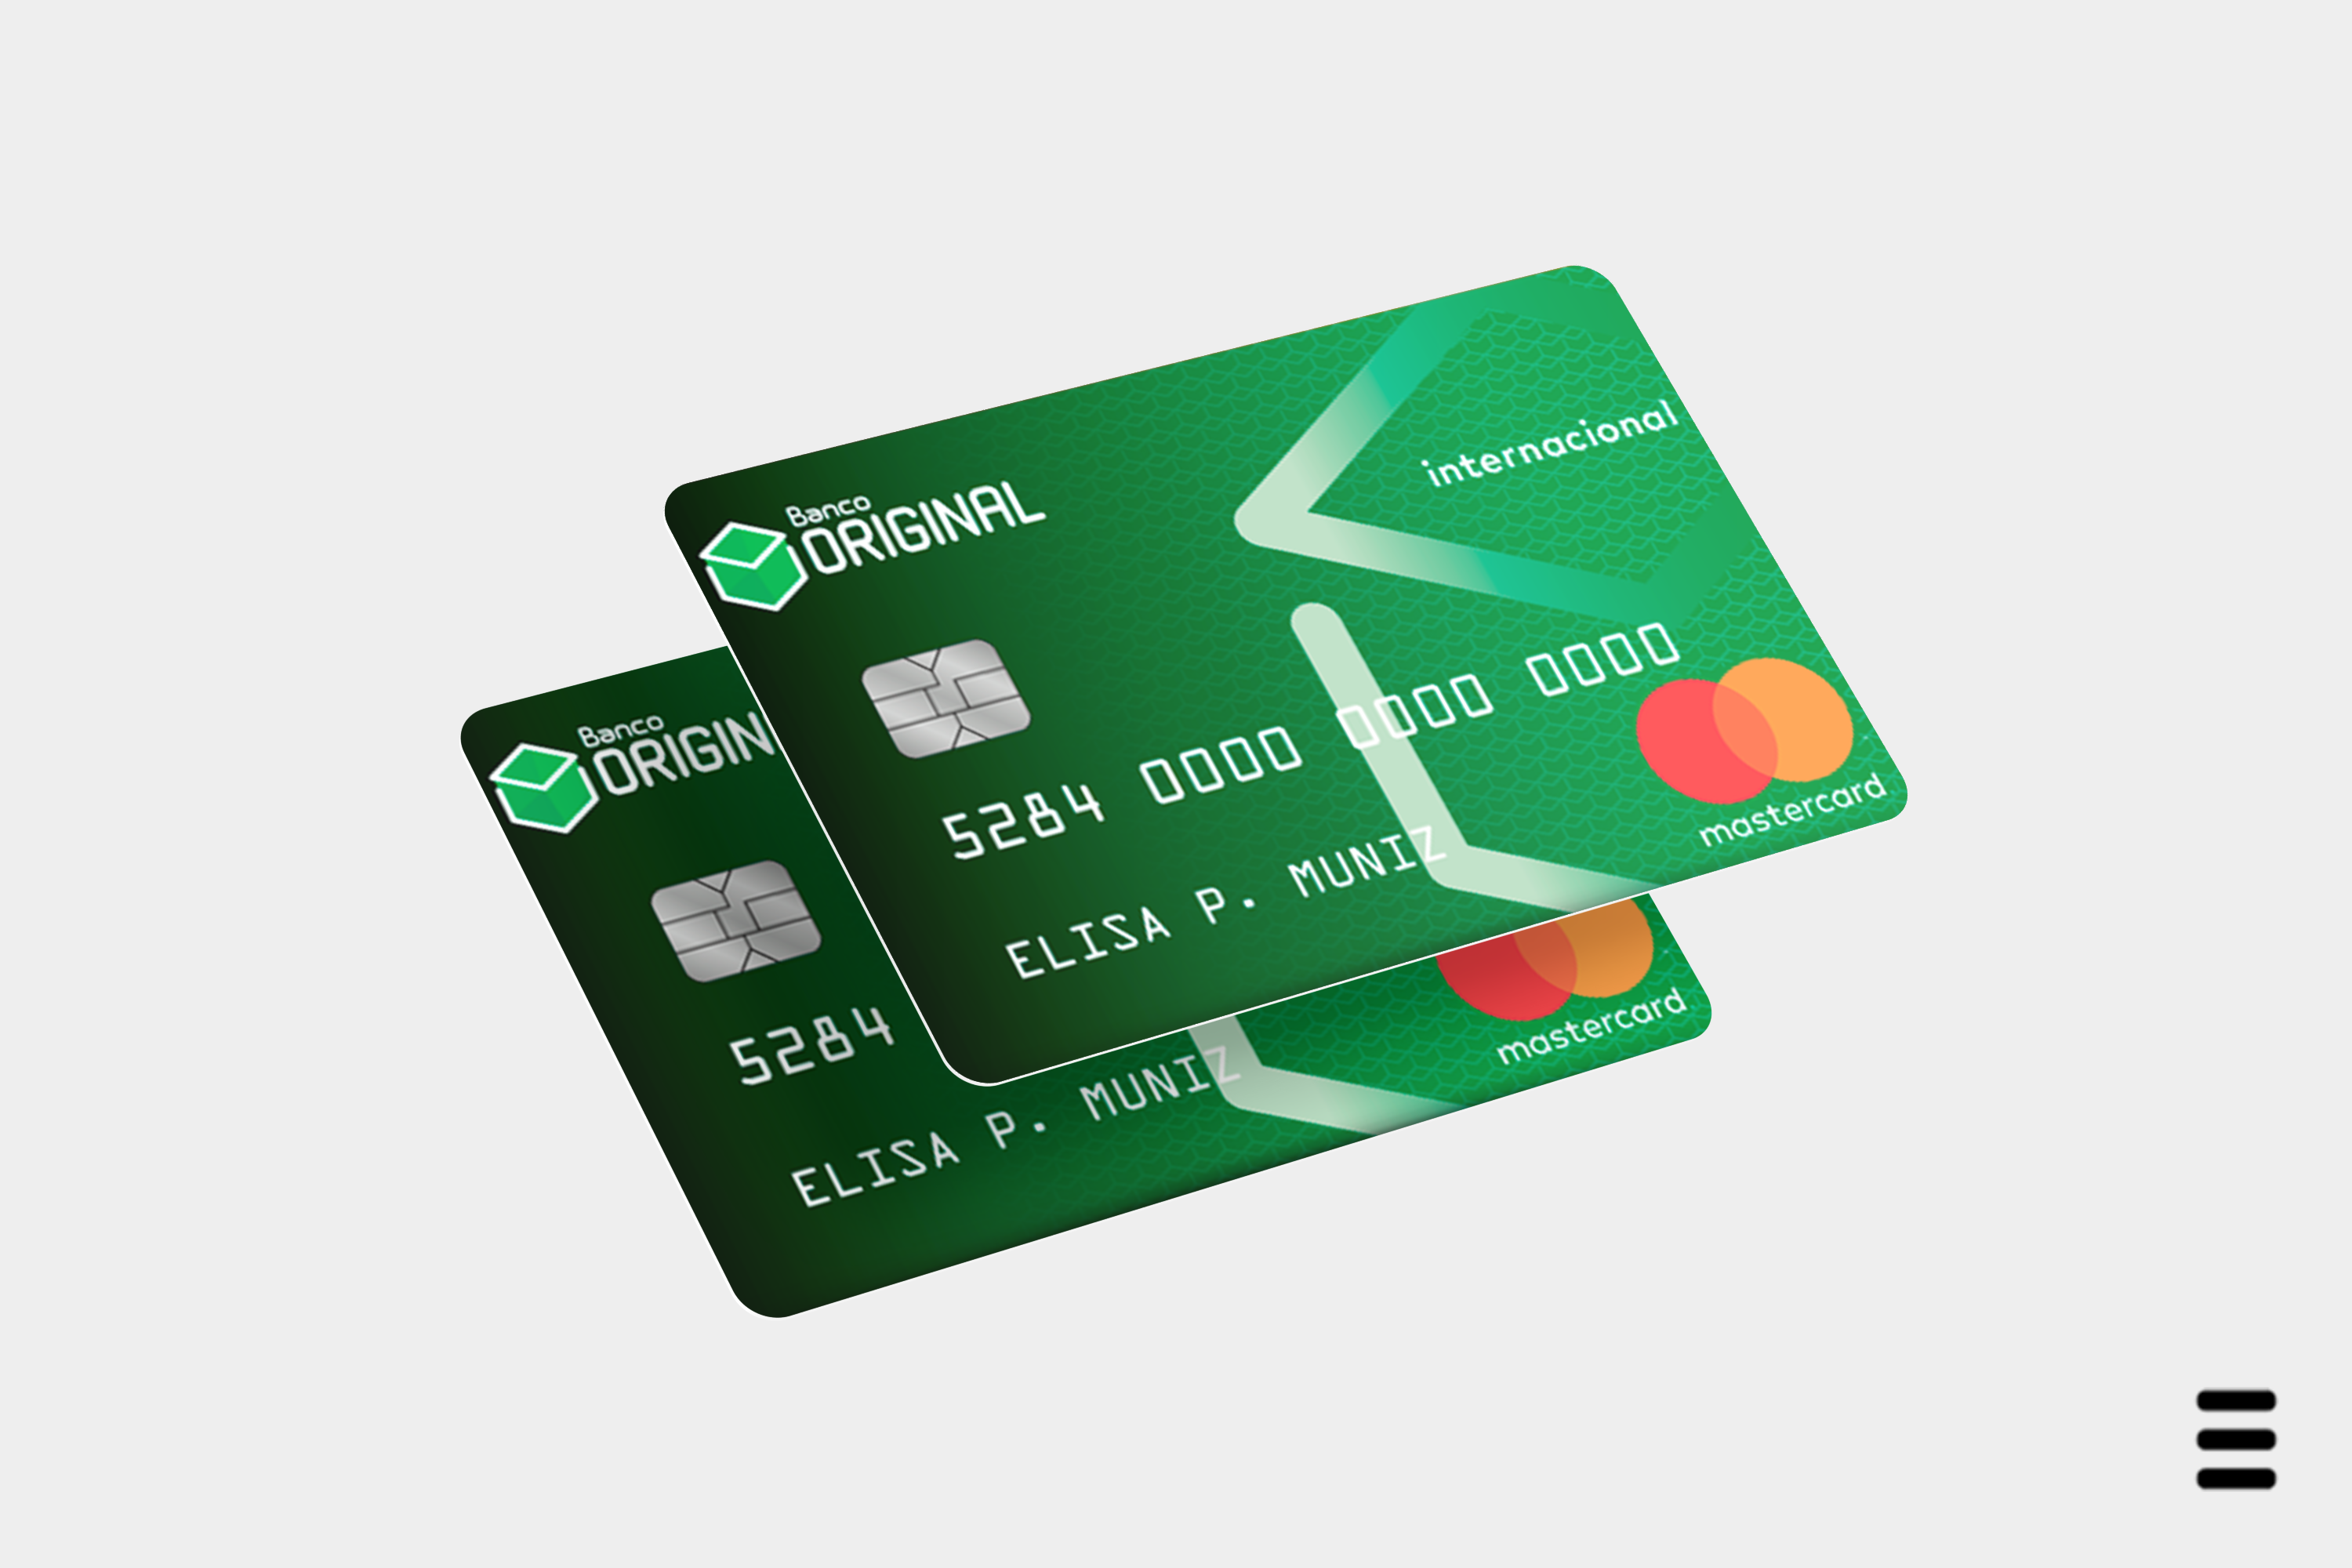 Cartão de crédito Original: anuidade gratuita e cashback